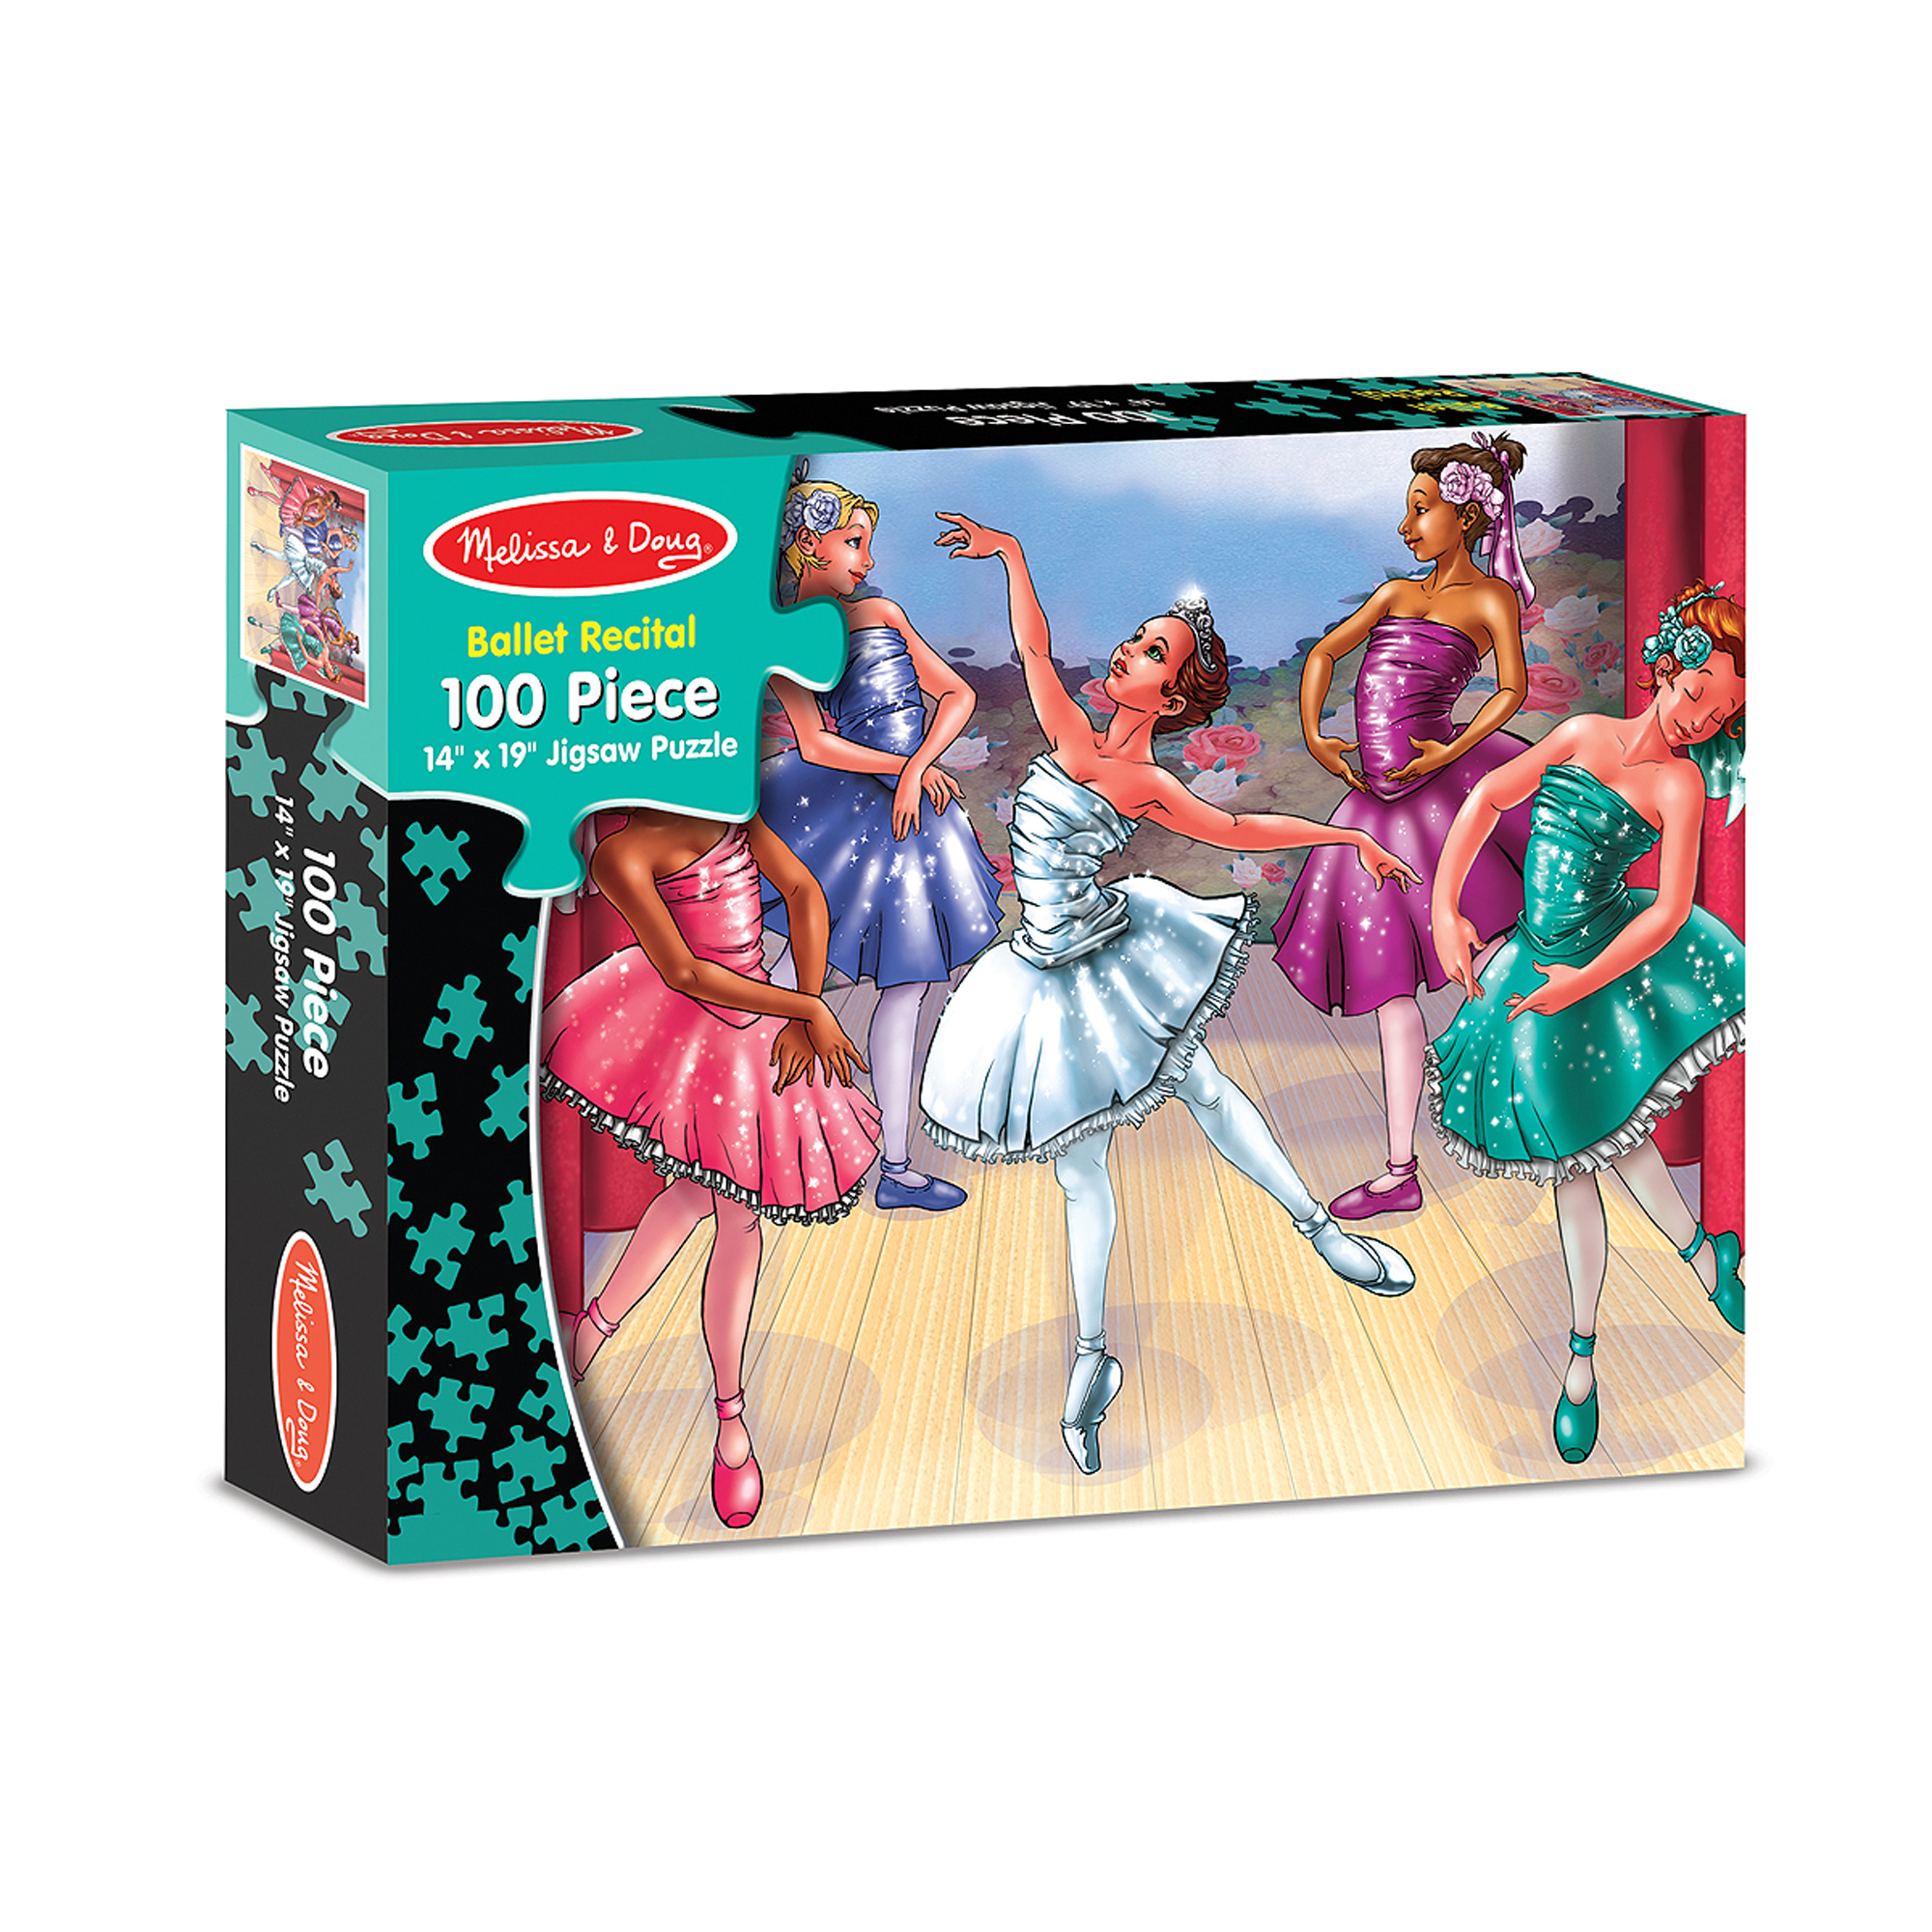 [100ชิ้น] รุ่น 1375 จิ๊กซอ100 ชิ้น รุ่นการแสดงบัลเลต์ Melissa & Doug Ballet Recital Jigsaw Puzzle 100 Pcs รีวิวดีใน Amazon USA ต่อแล้วขนาด 48 x 36 cm  ของเล่น มาลิซ่า 5 - 8 ขวบ